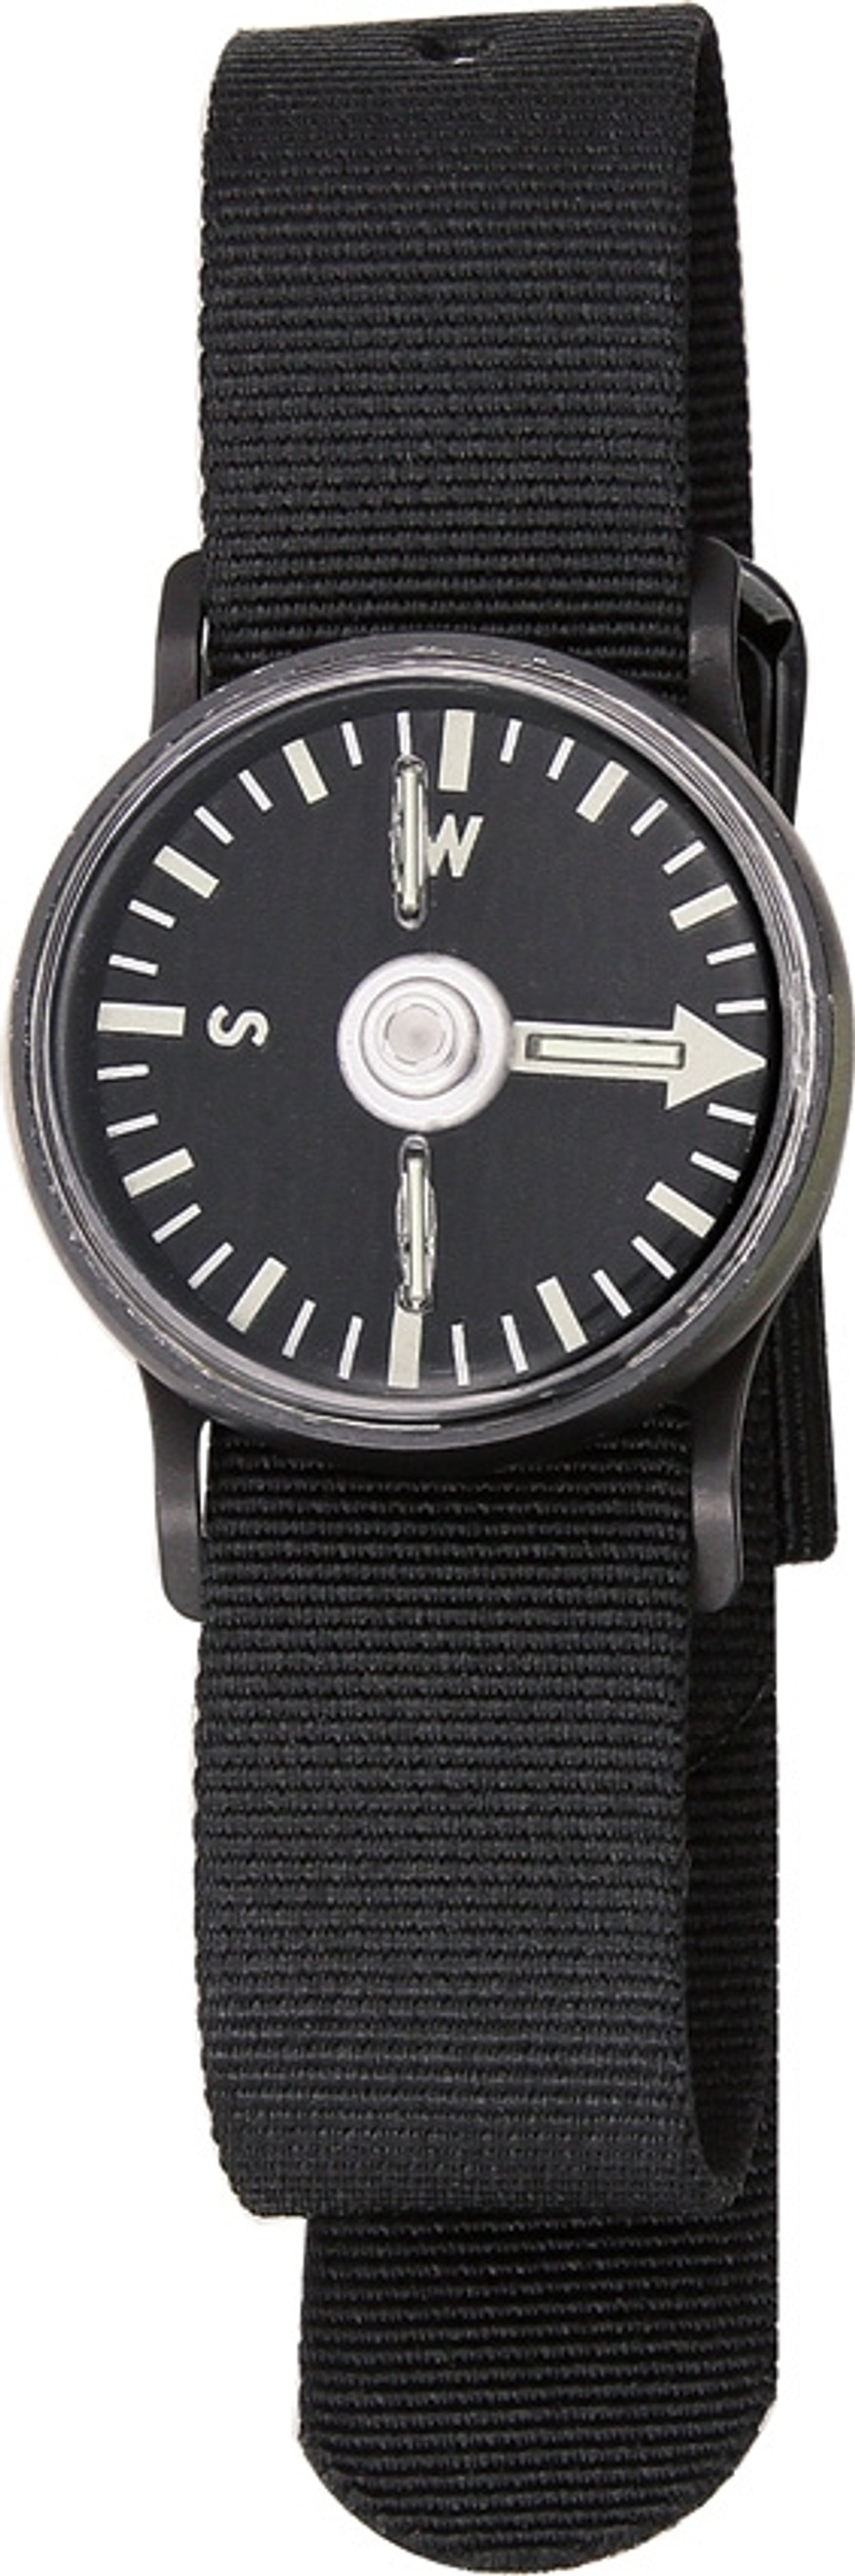 Tritium Wrist Compass